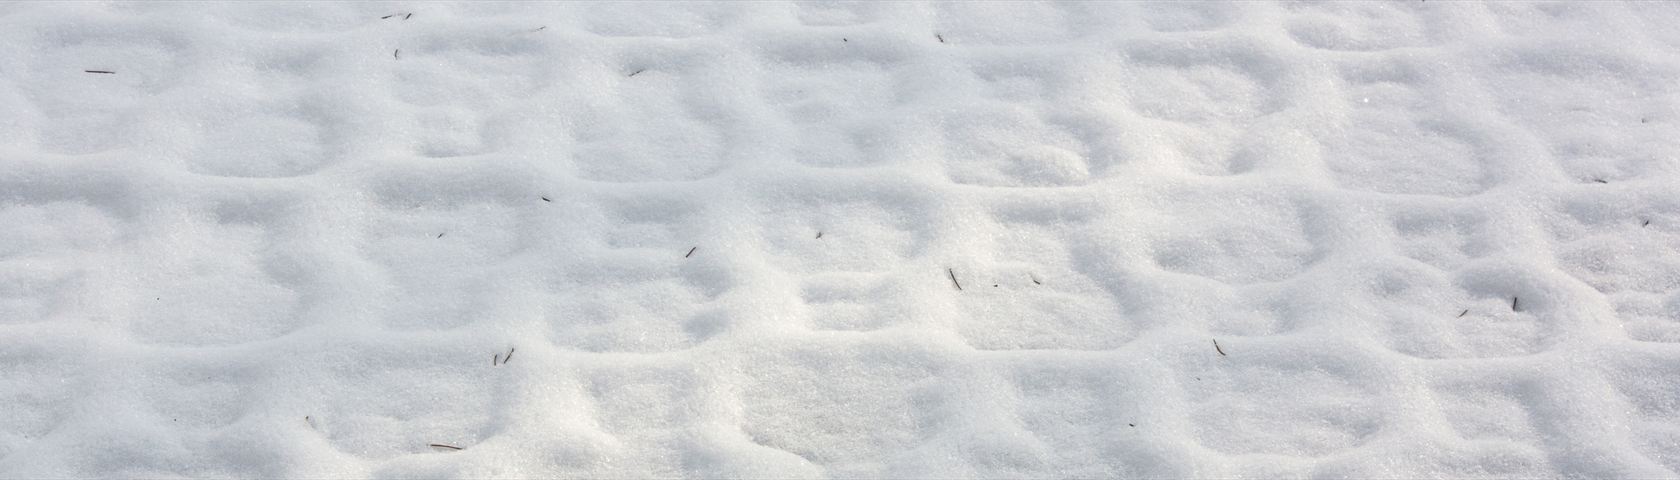 Snowy Pattern